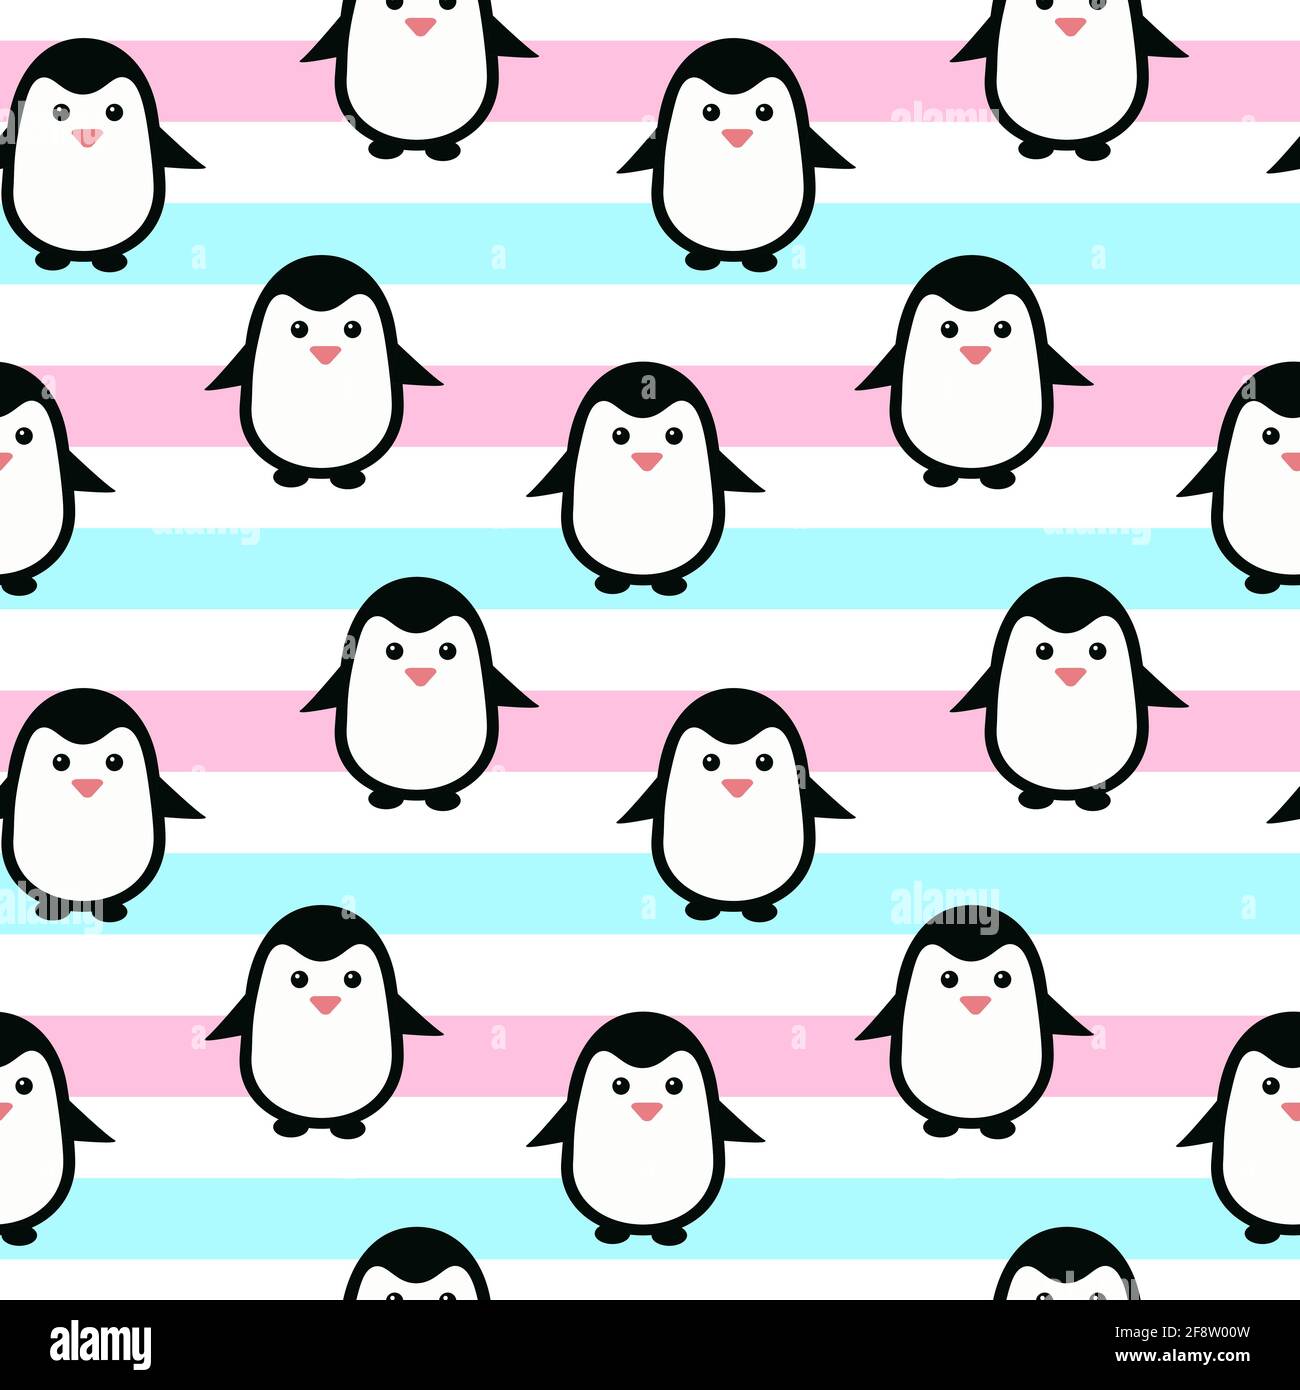 Esemplare di pinguino. Caratteri carini, pattern ripetuto. Colori pastello, modello solido per bambini design.Vector. Illustrazione Vettoriale